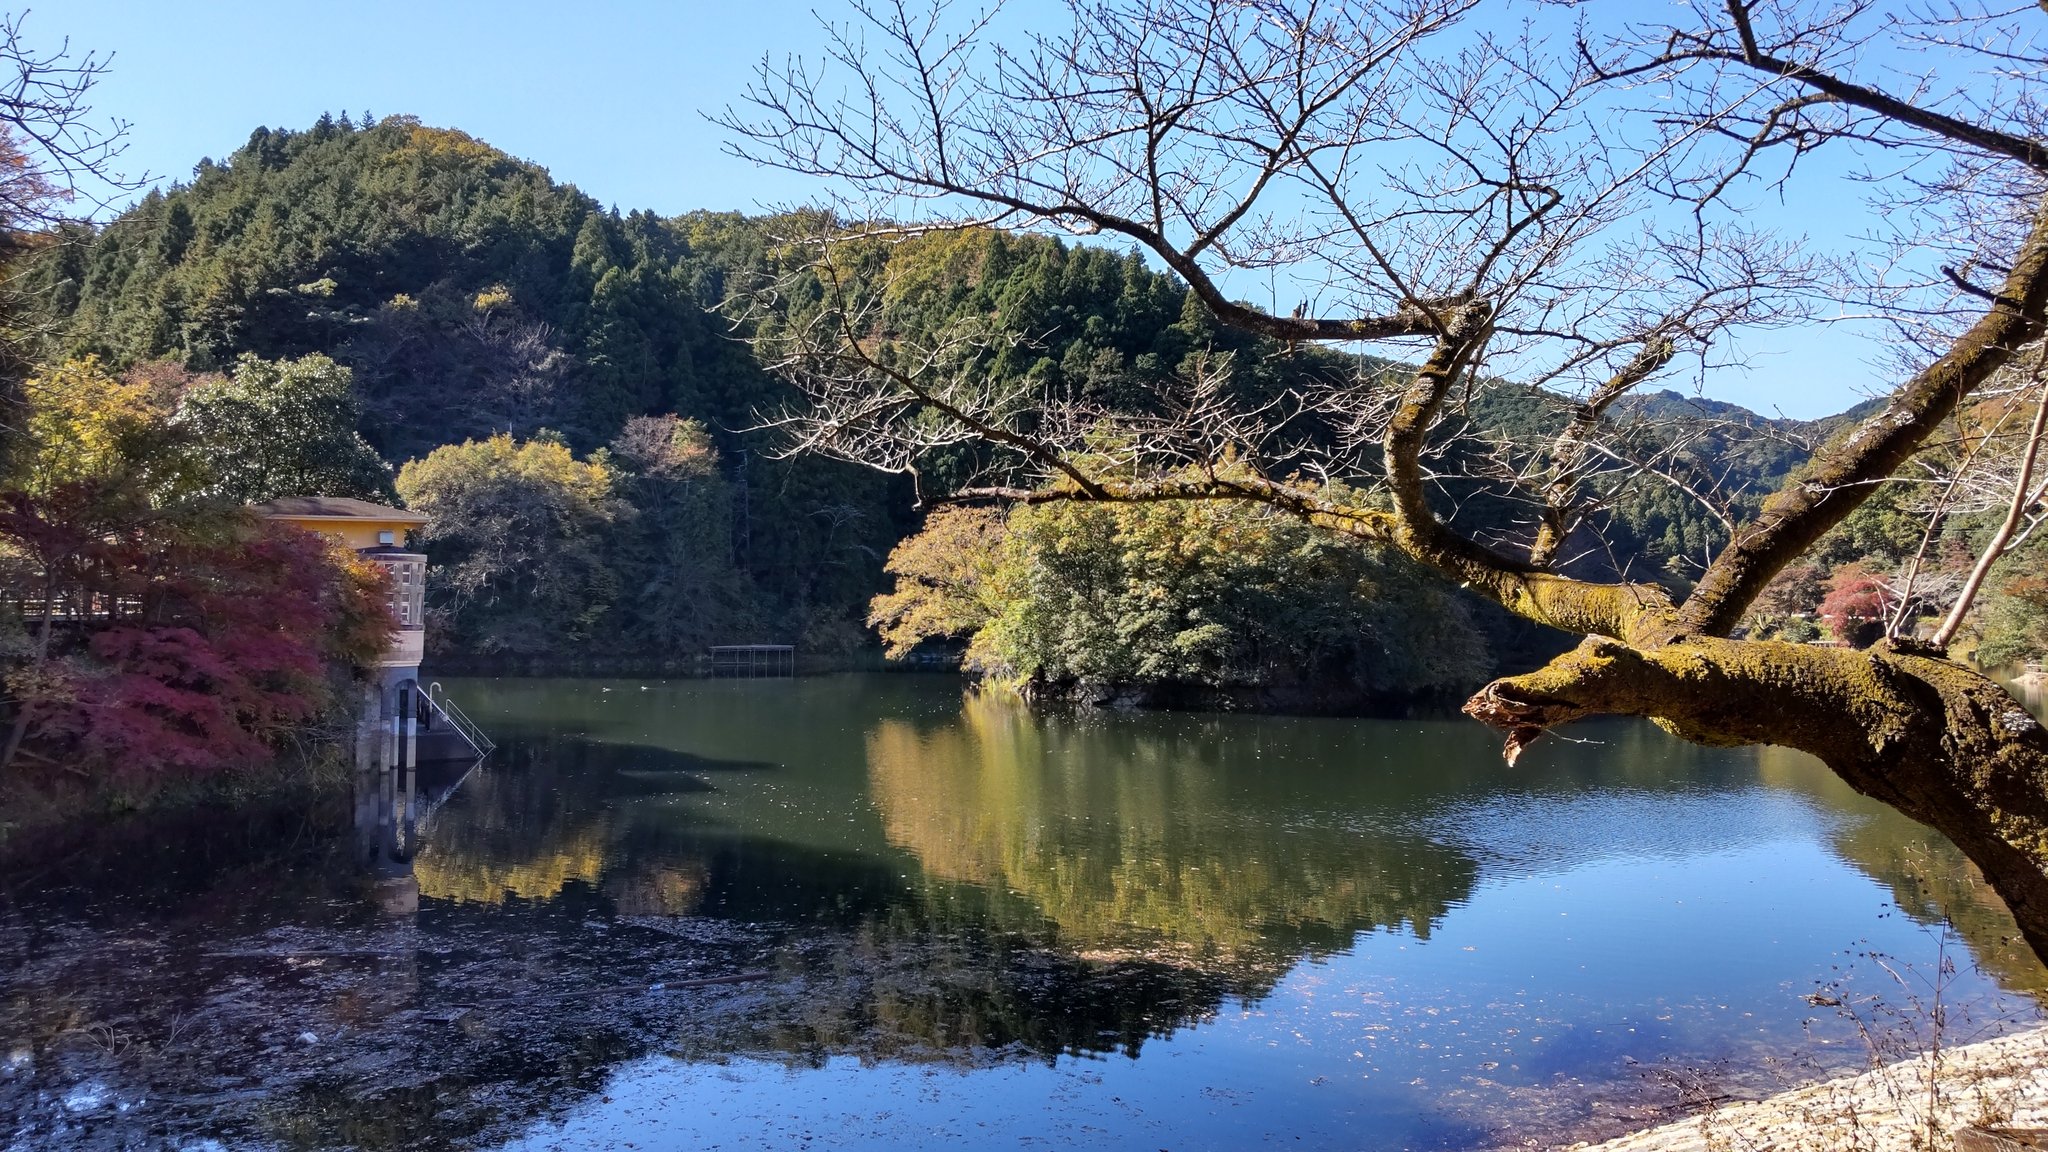 しろちゃん 葉が色づいてきました 紅葉の季節ですね 鎌北湖 T Co 8voiqbs3vs Twitter